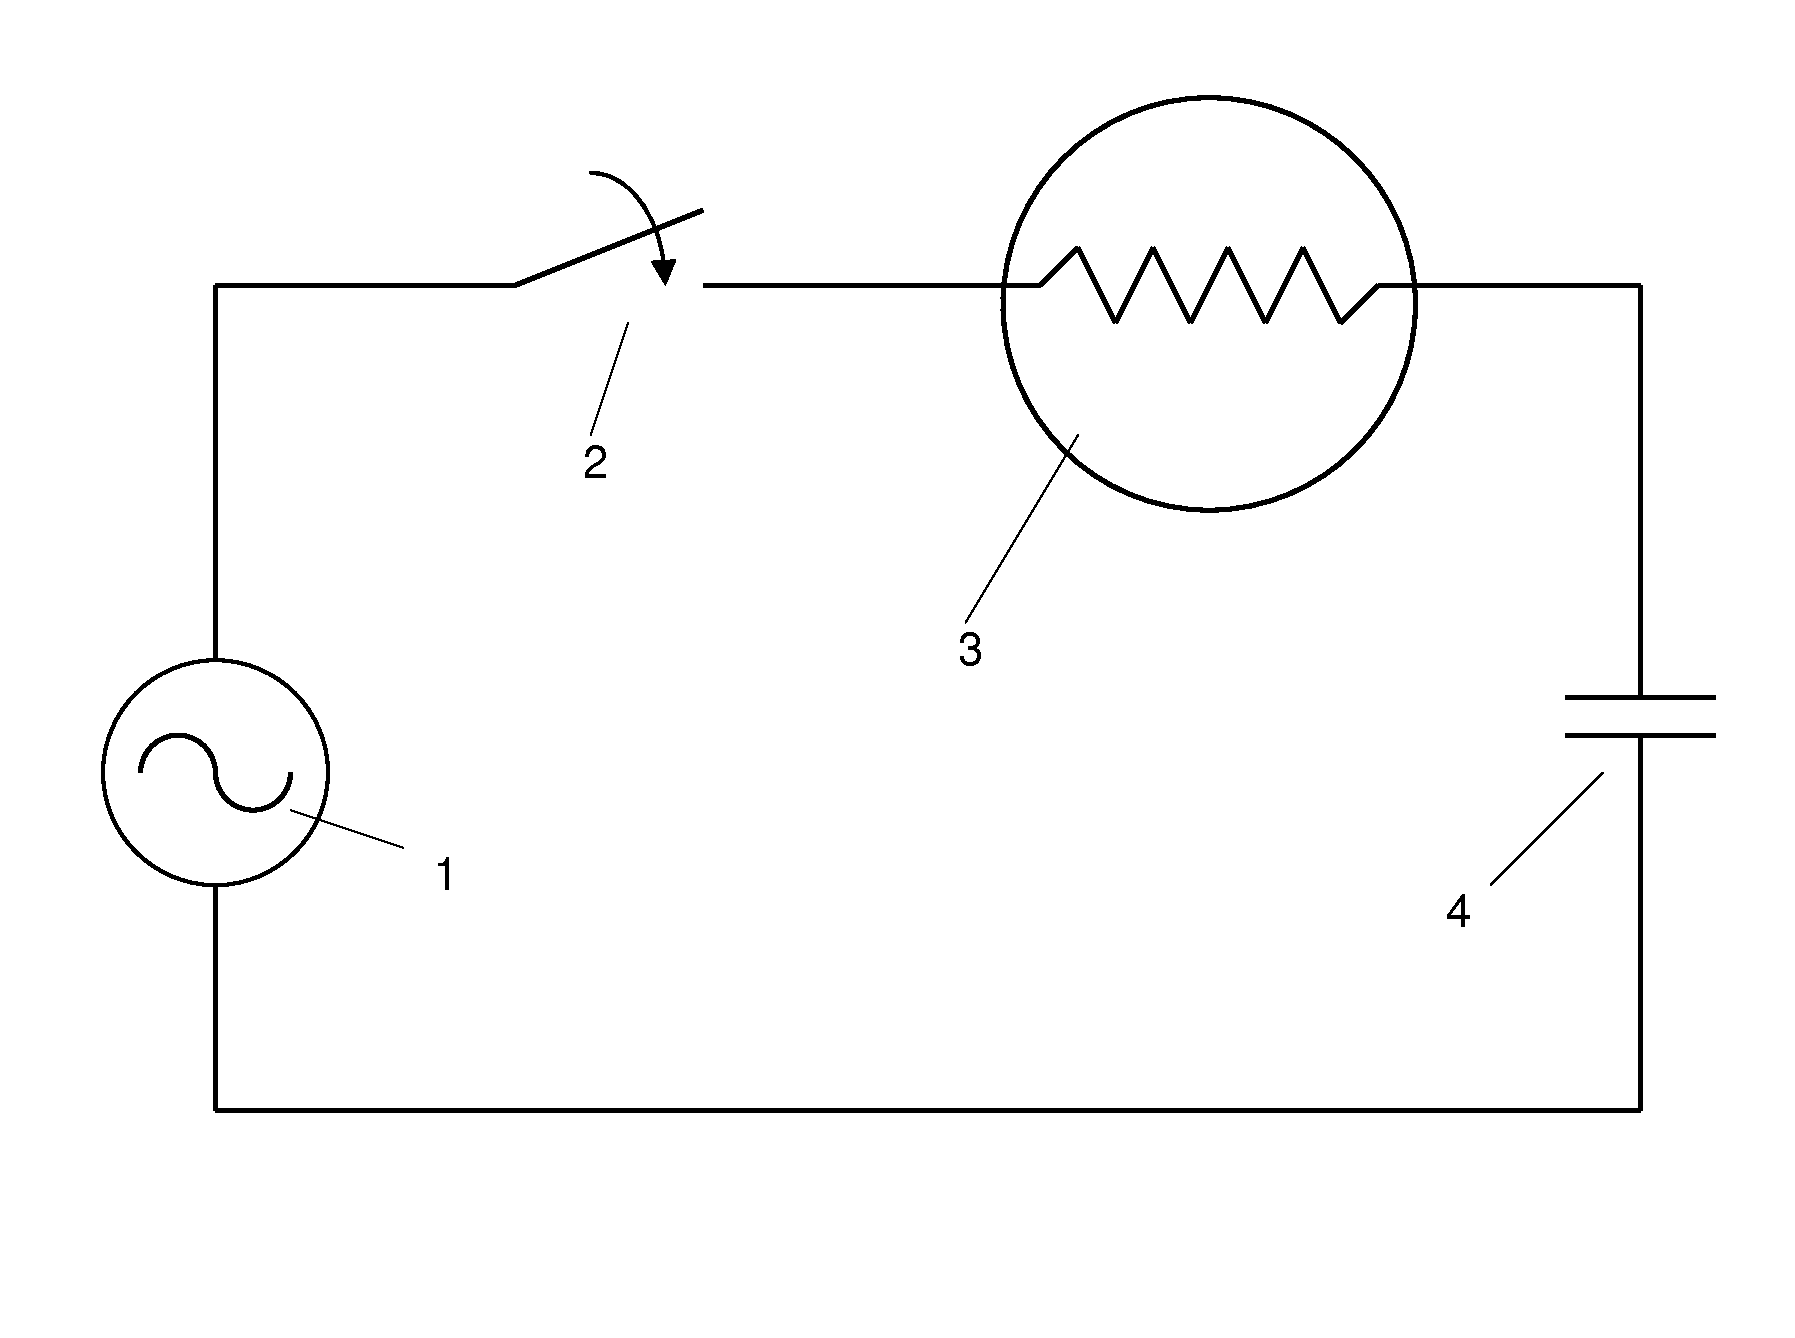 Low-, medium-, or high-voltage switchgear